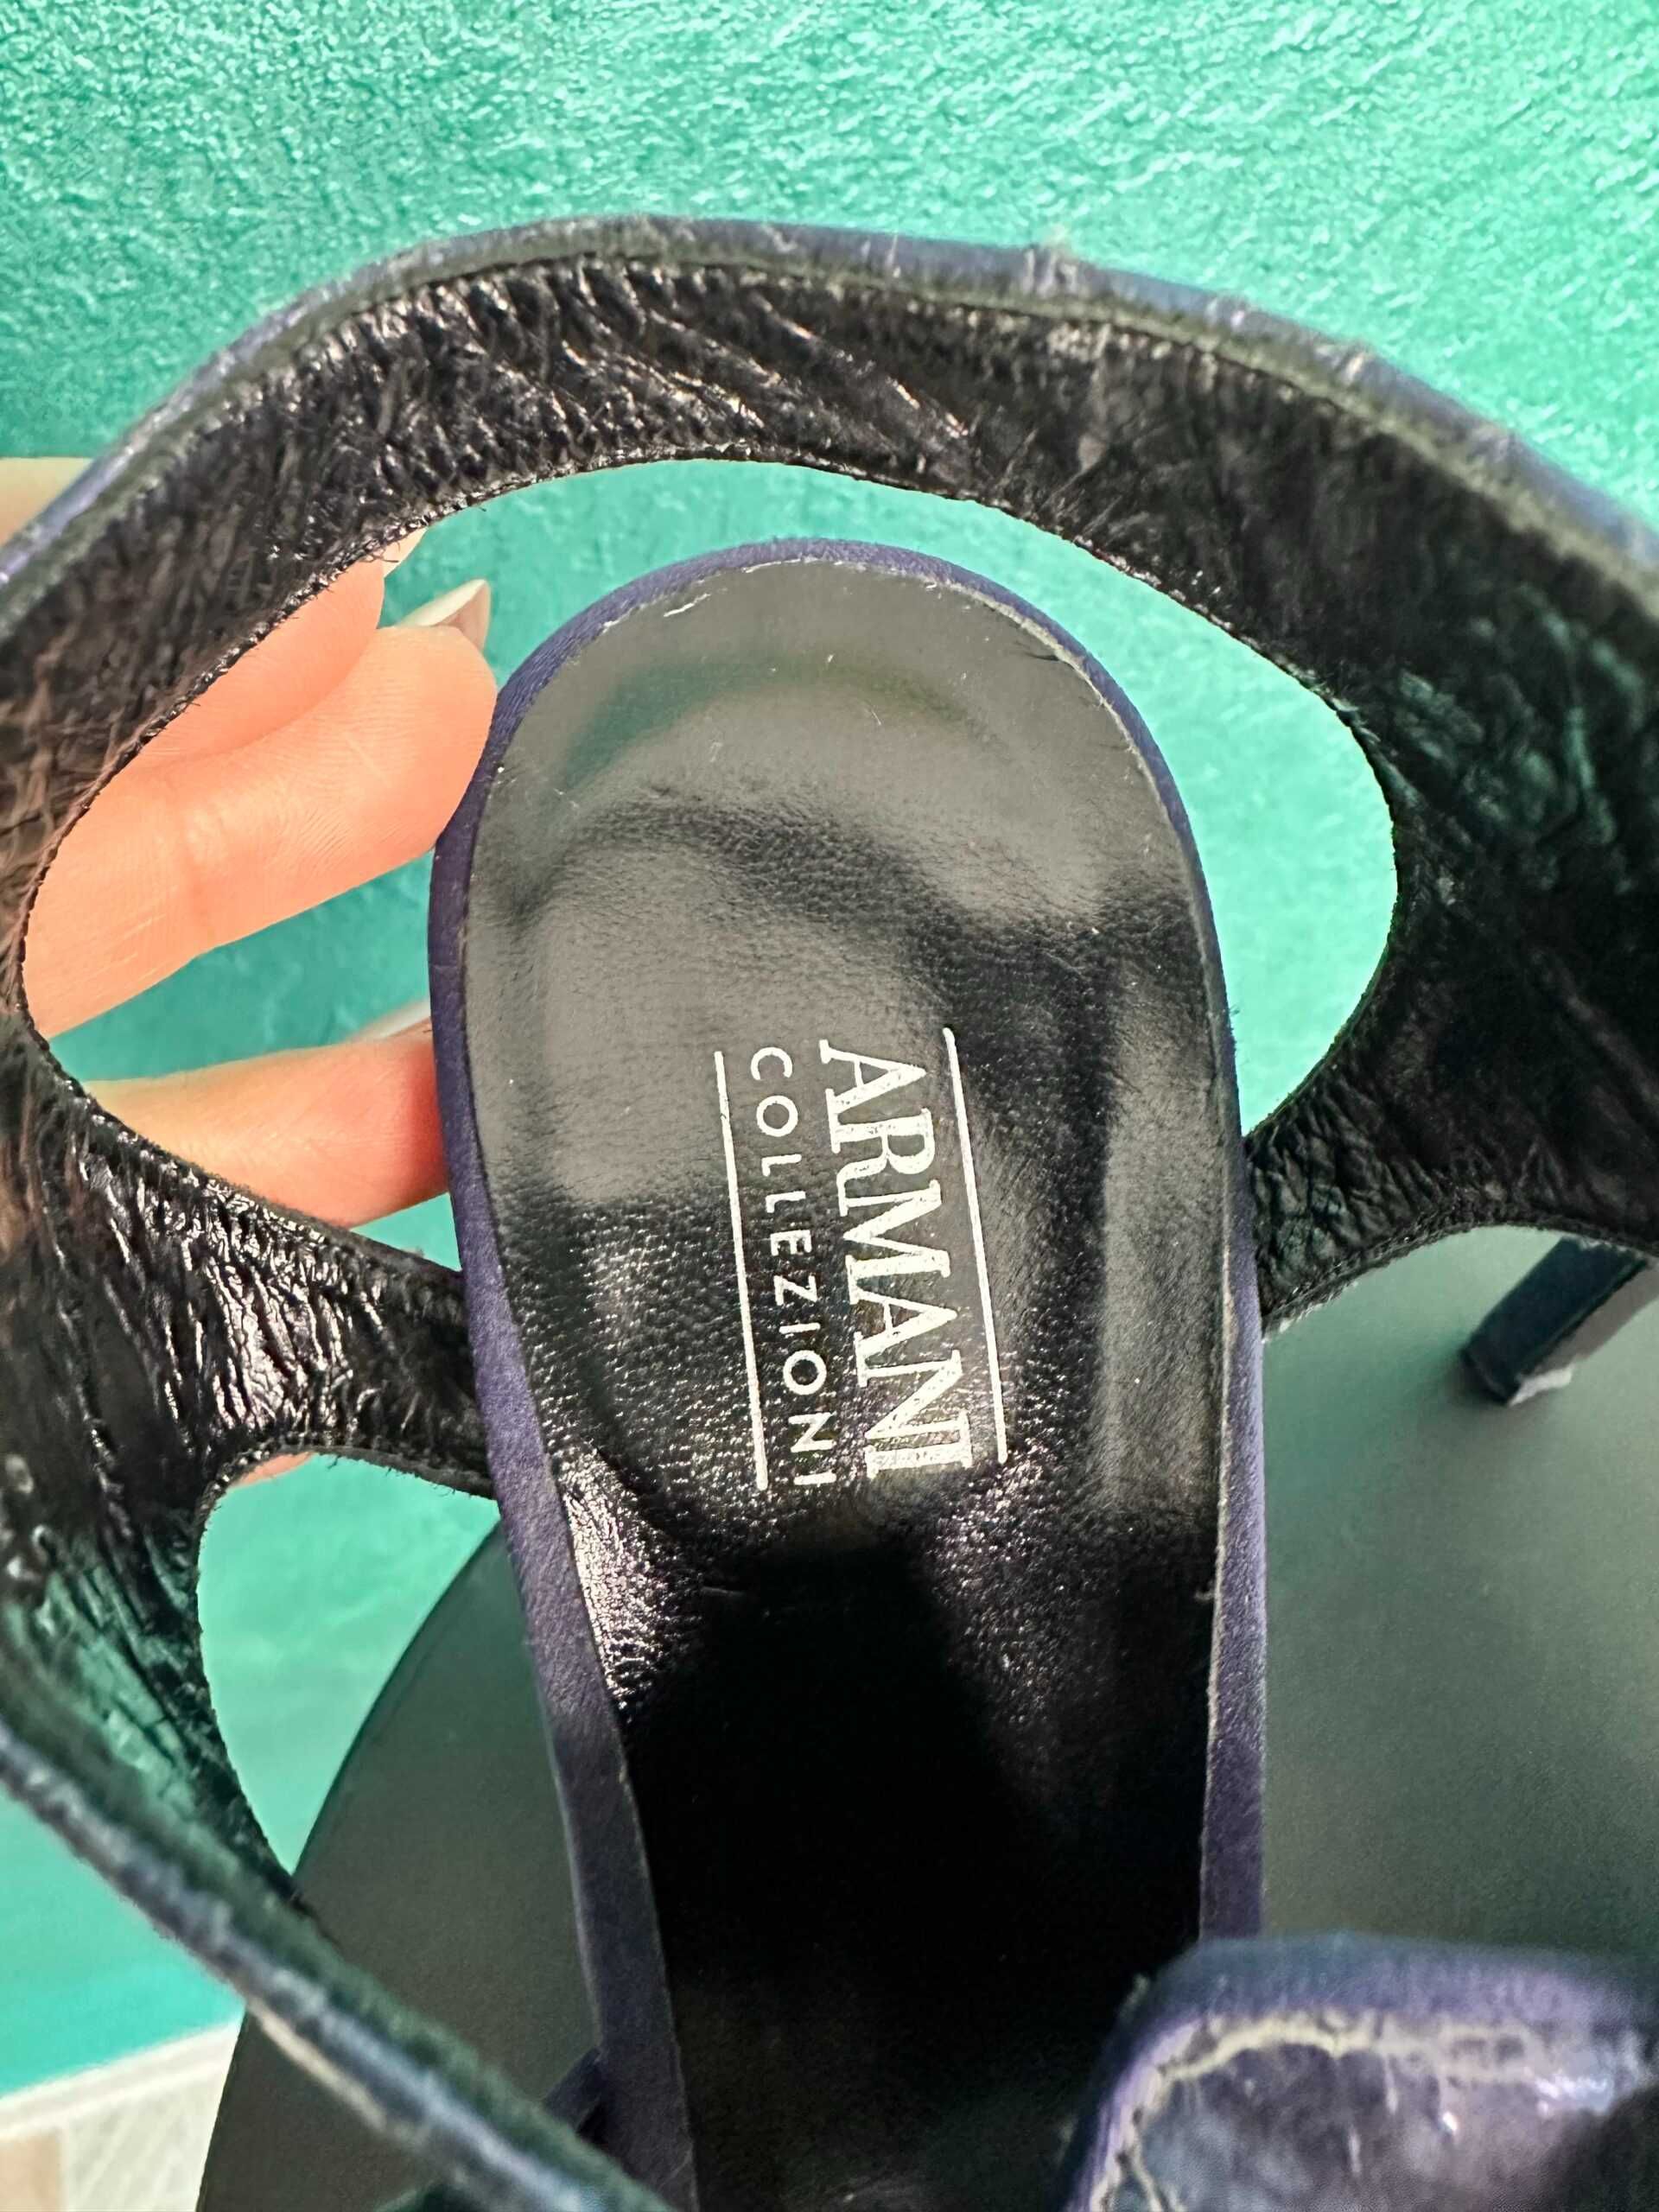 Sandale ARMANI Collection, mărimea 38, piele de piton albastră